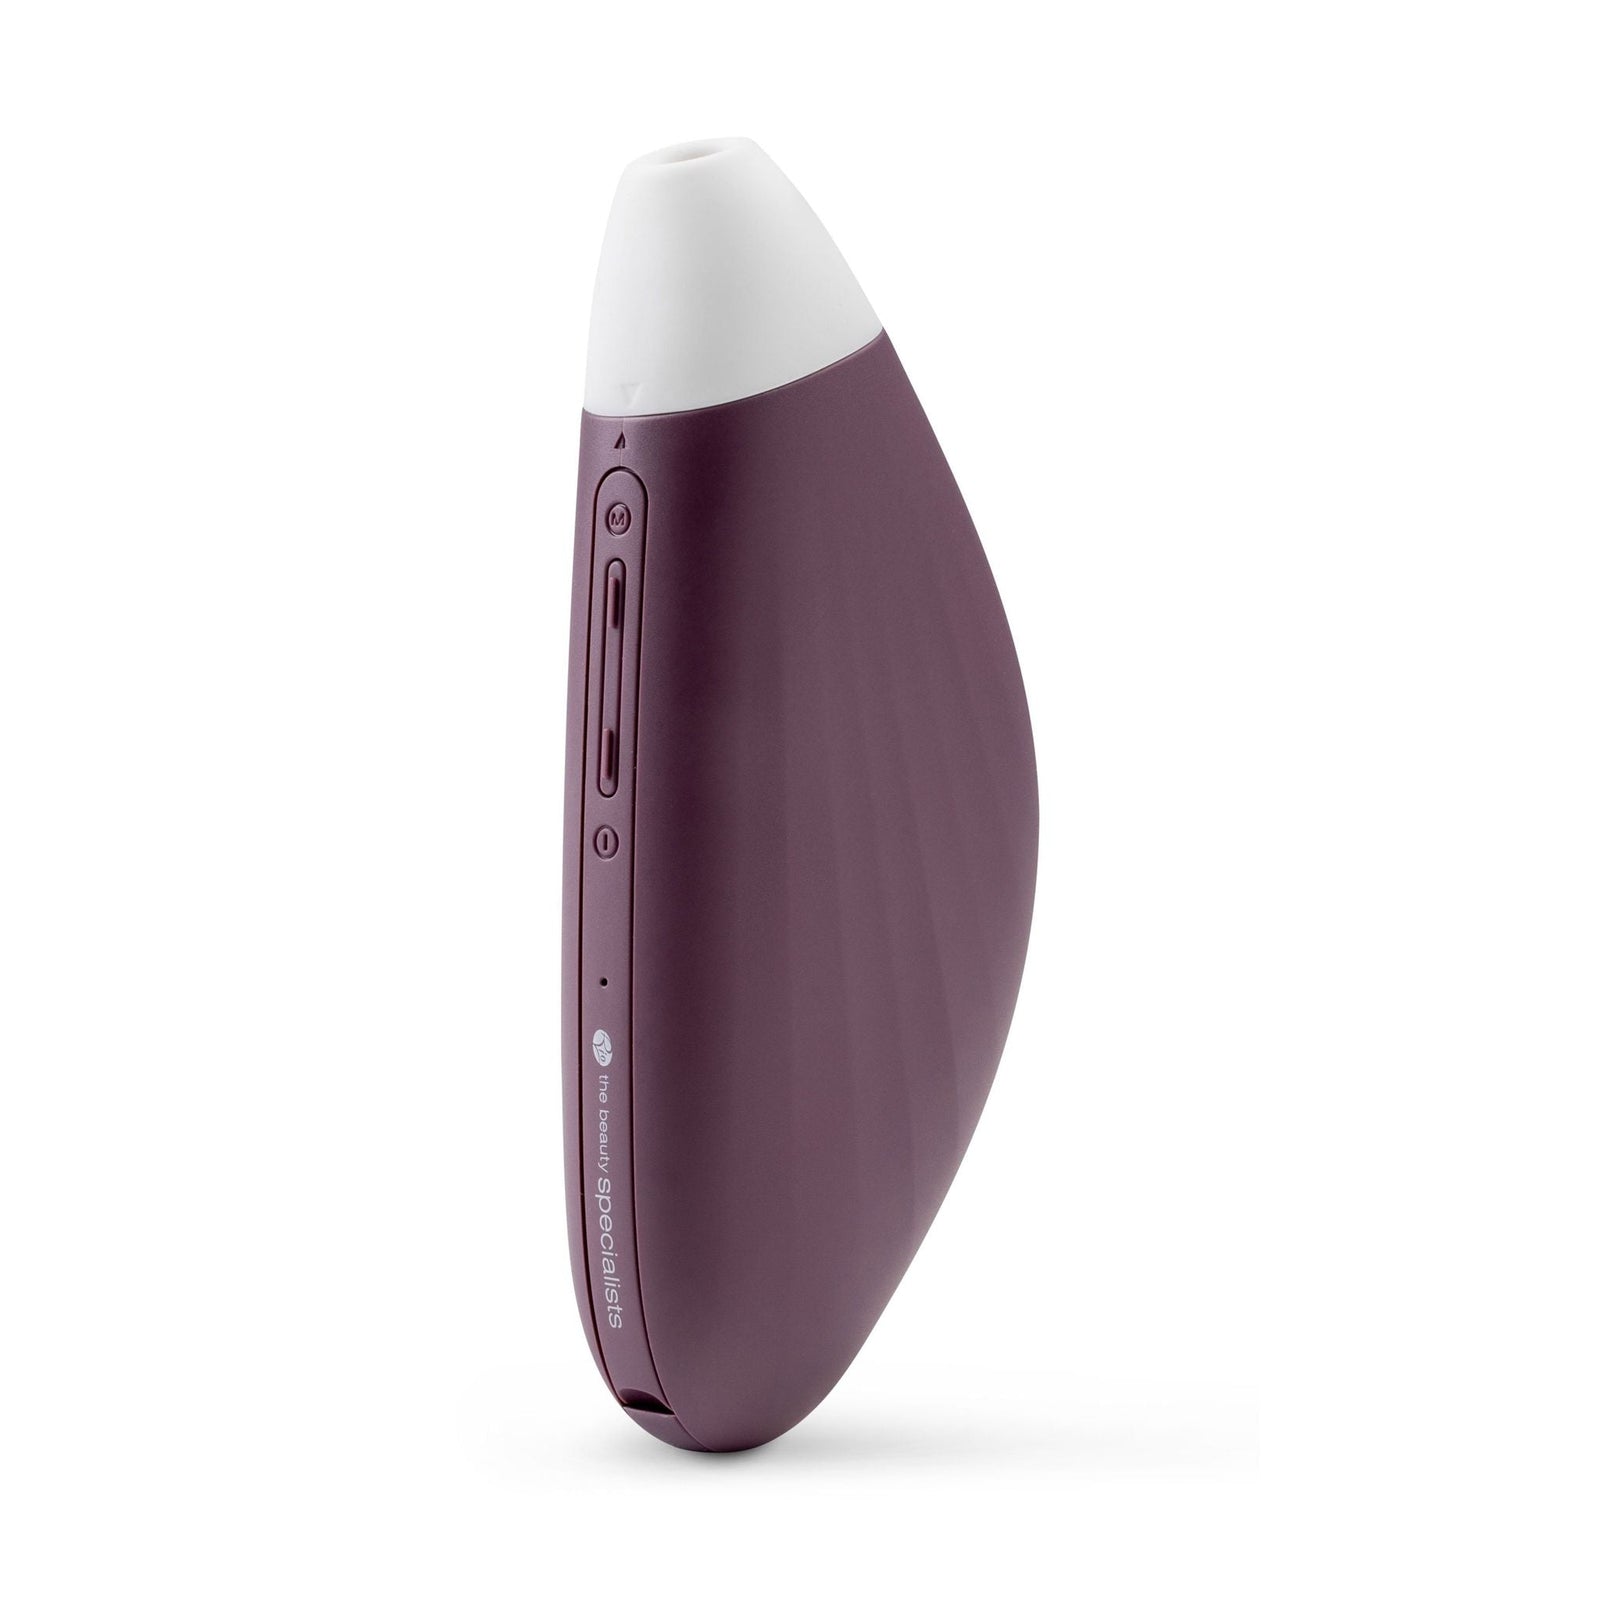 Pore perfector wireless purple unit 